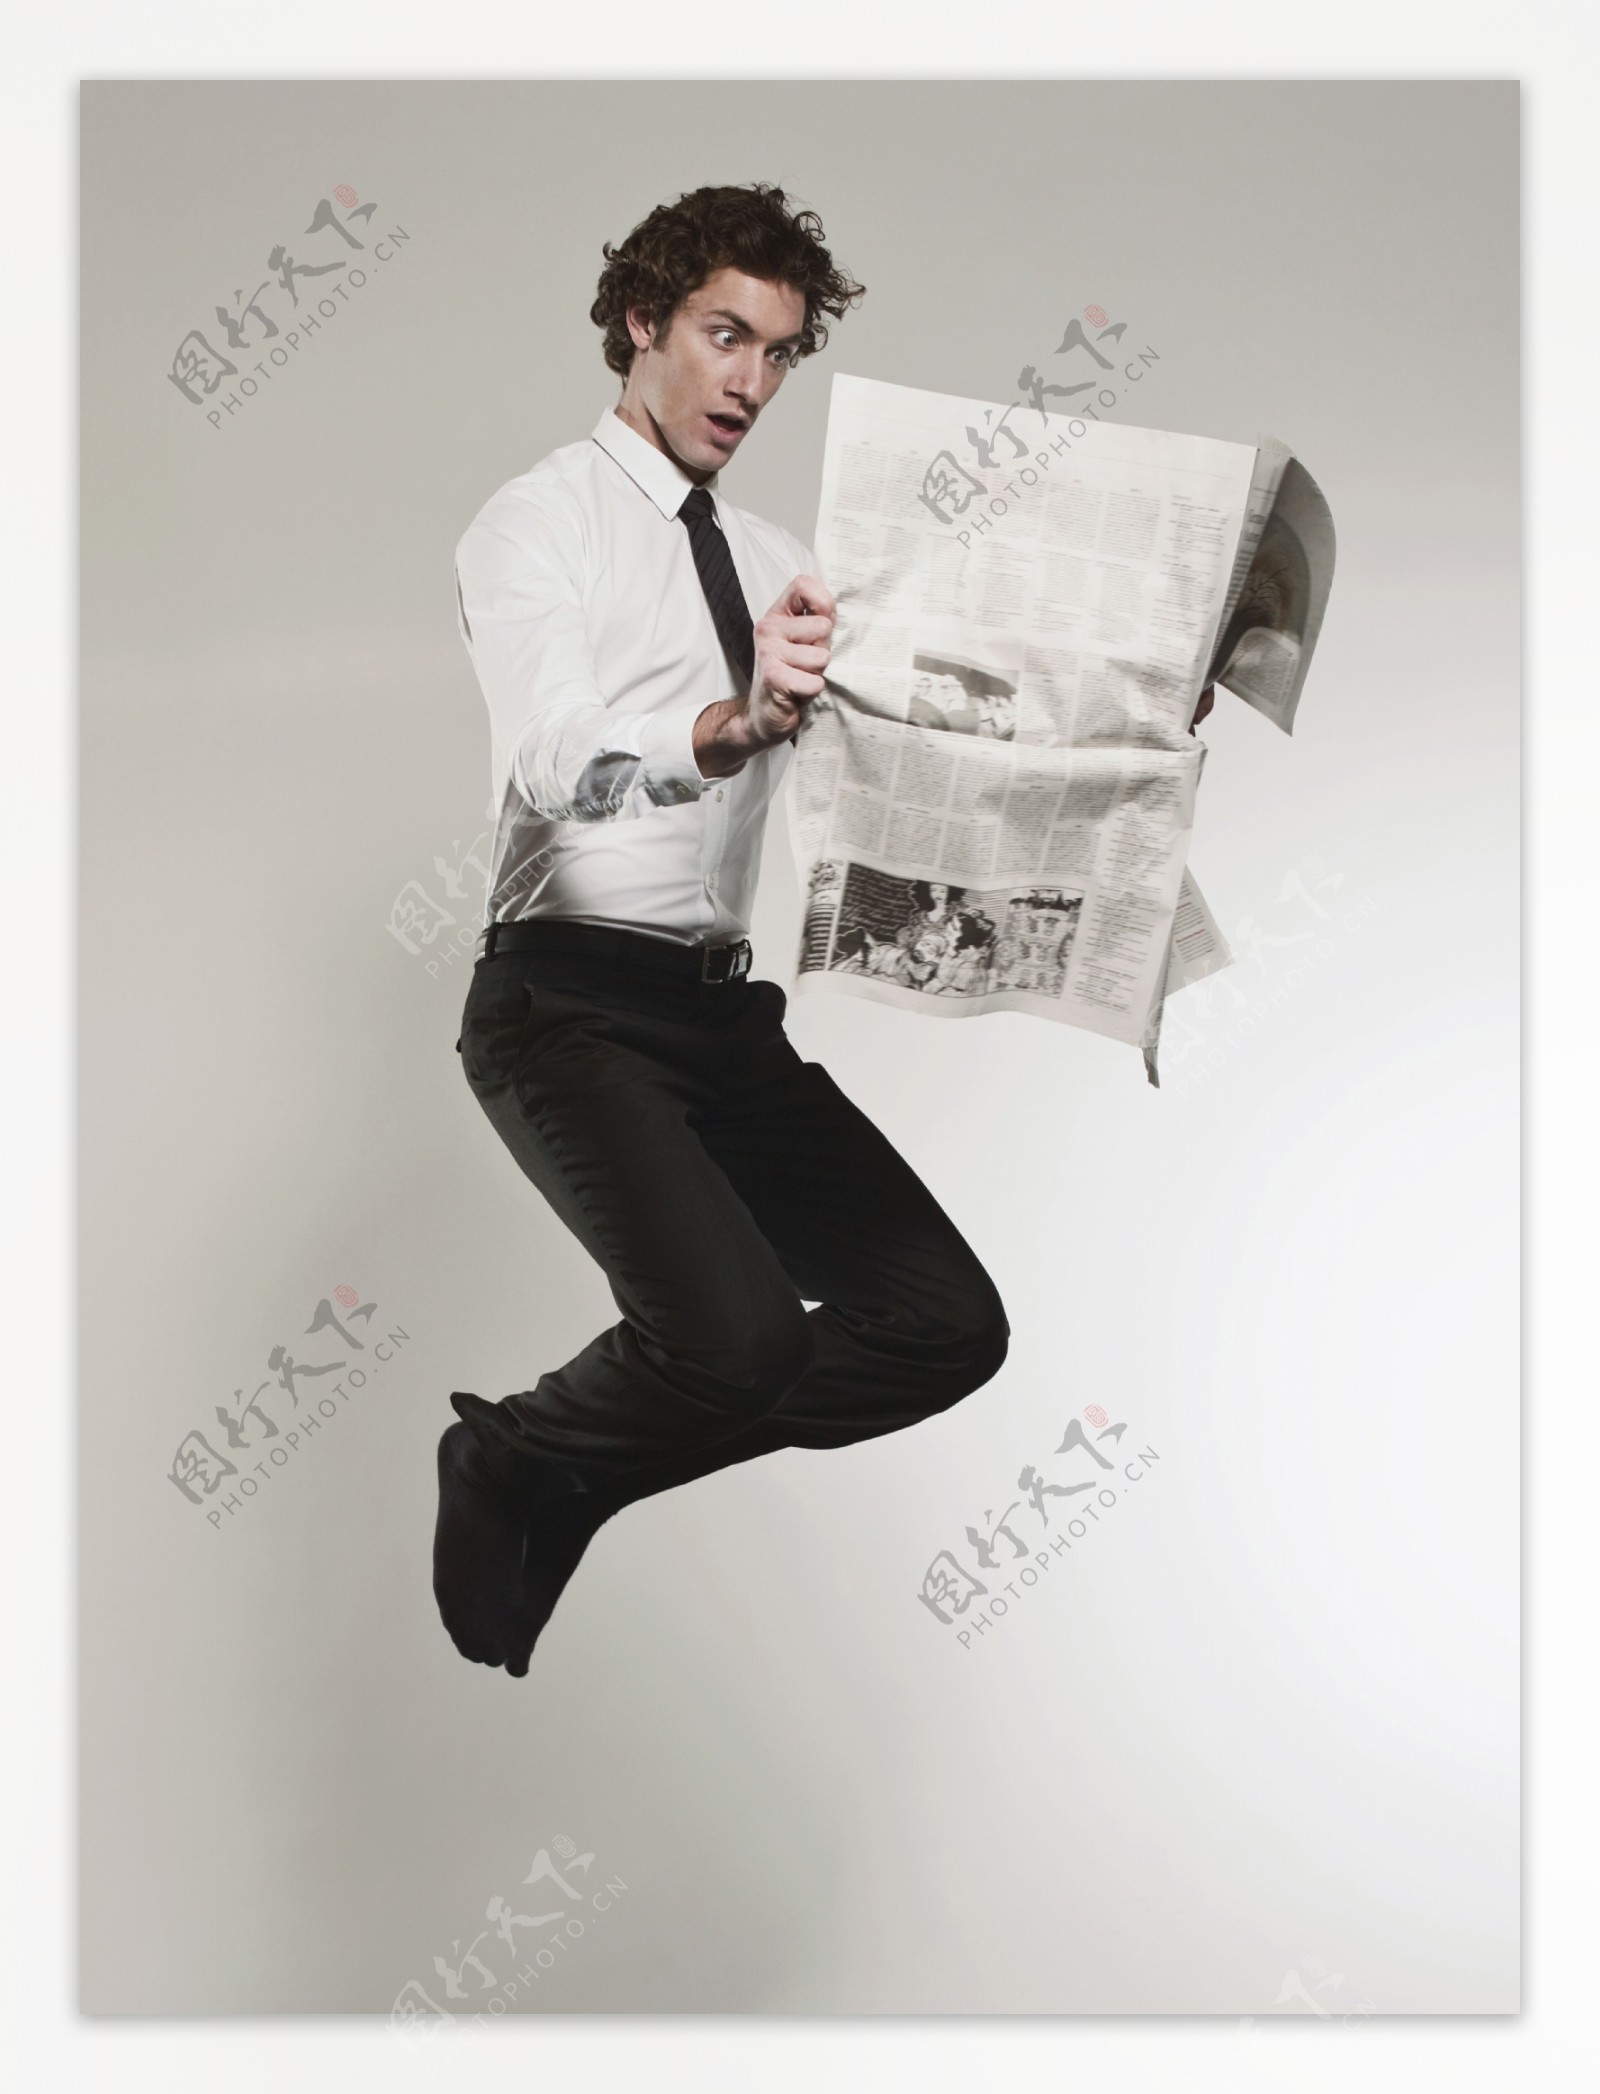 看报纸时激动跳跃的外国男性图片